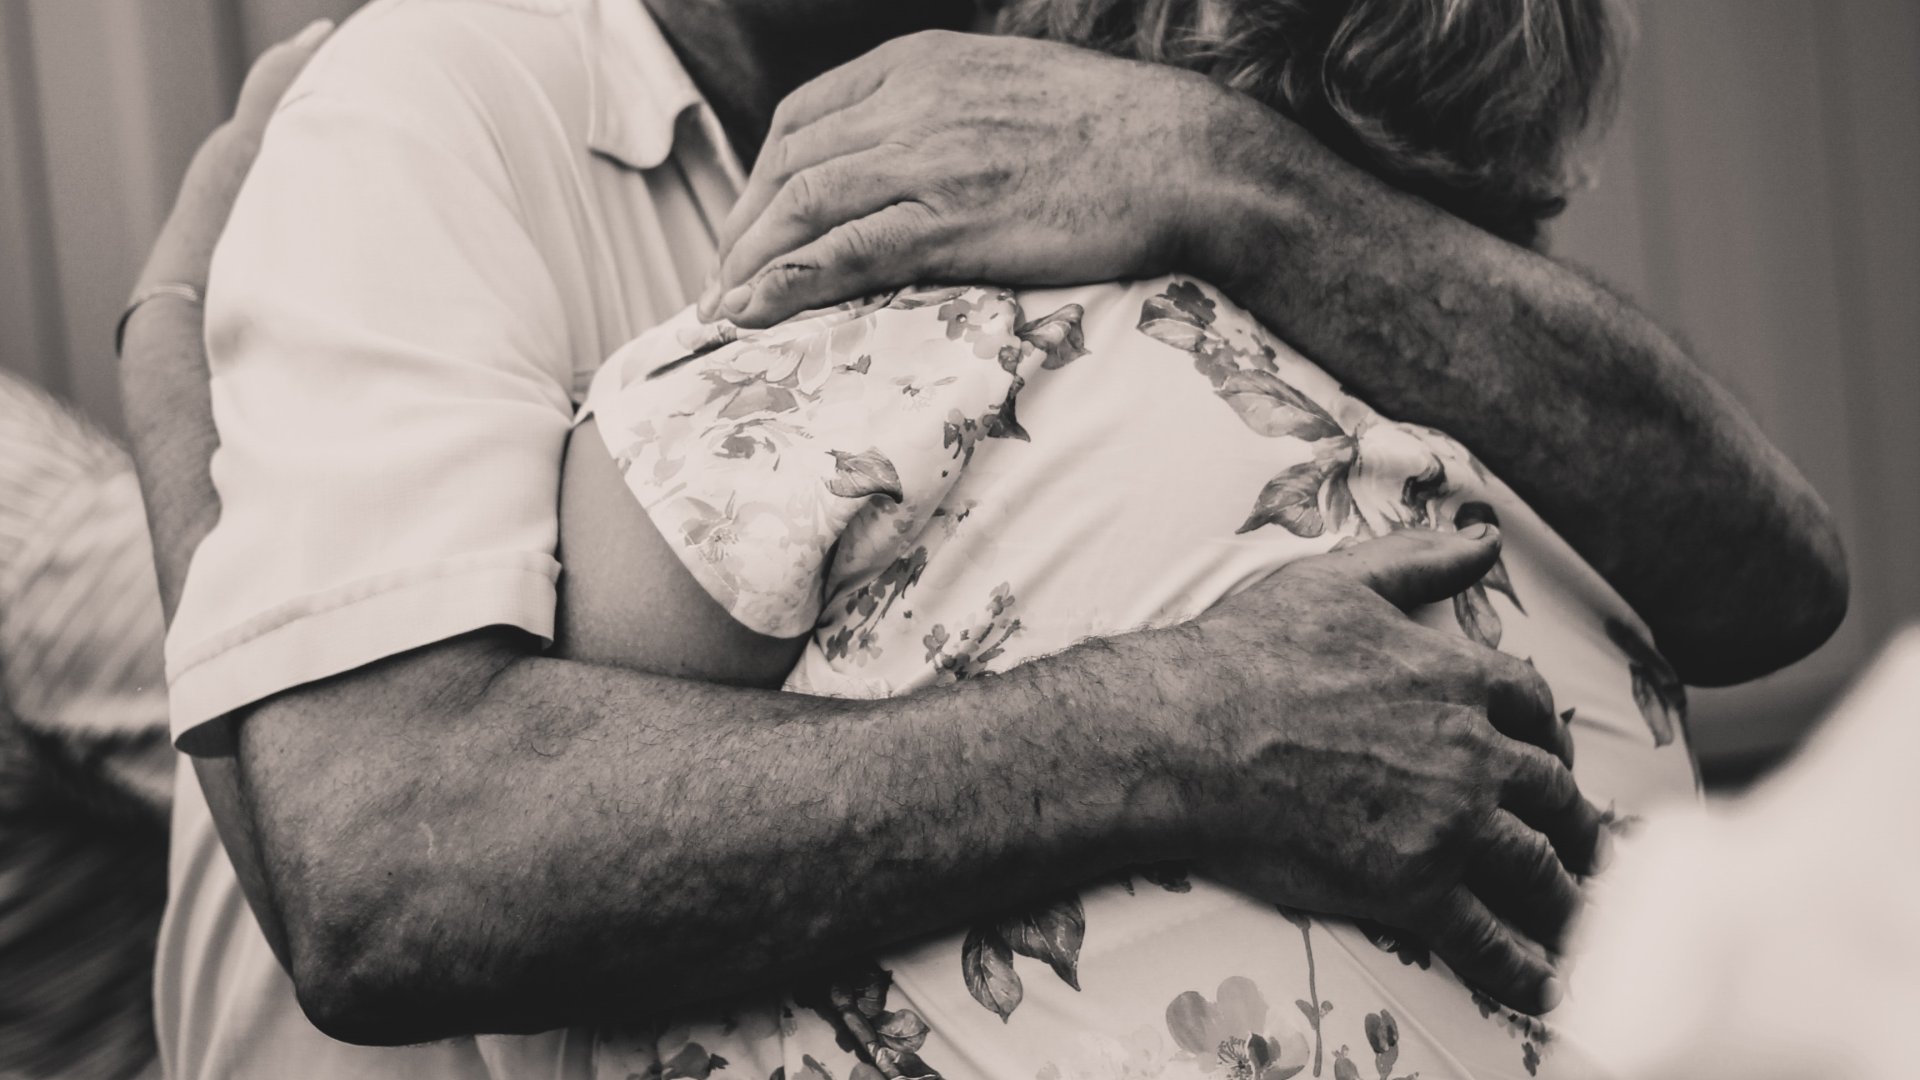 Egy idős férfi ölel egy idősebb nőt